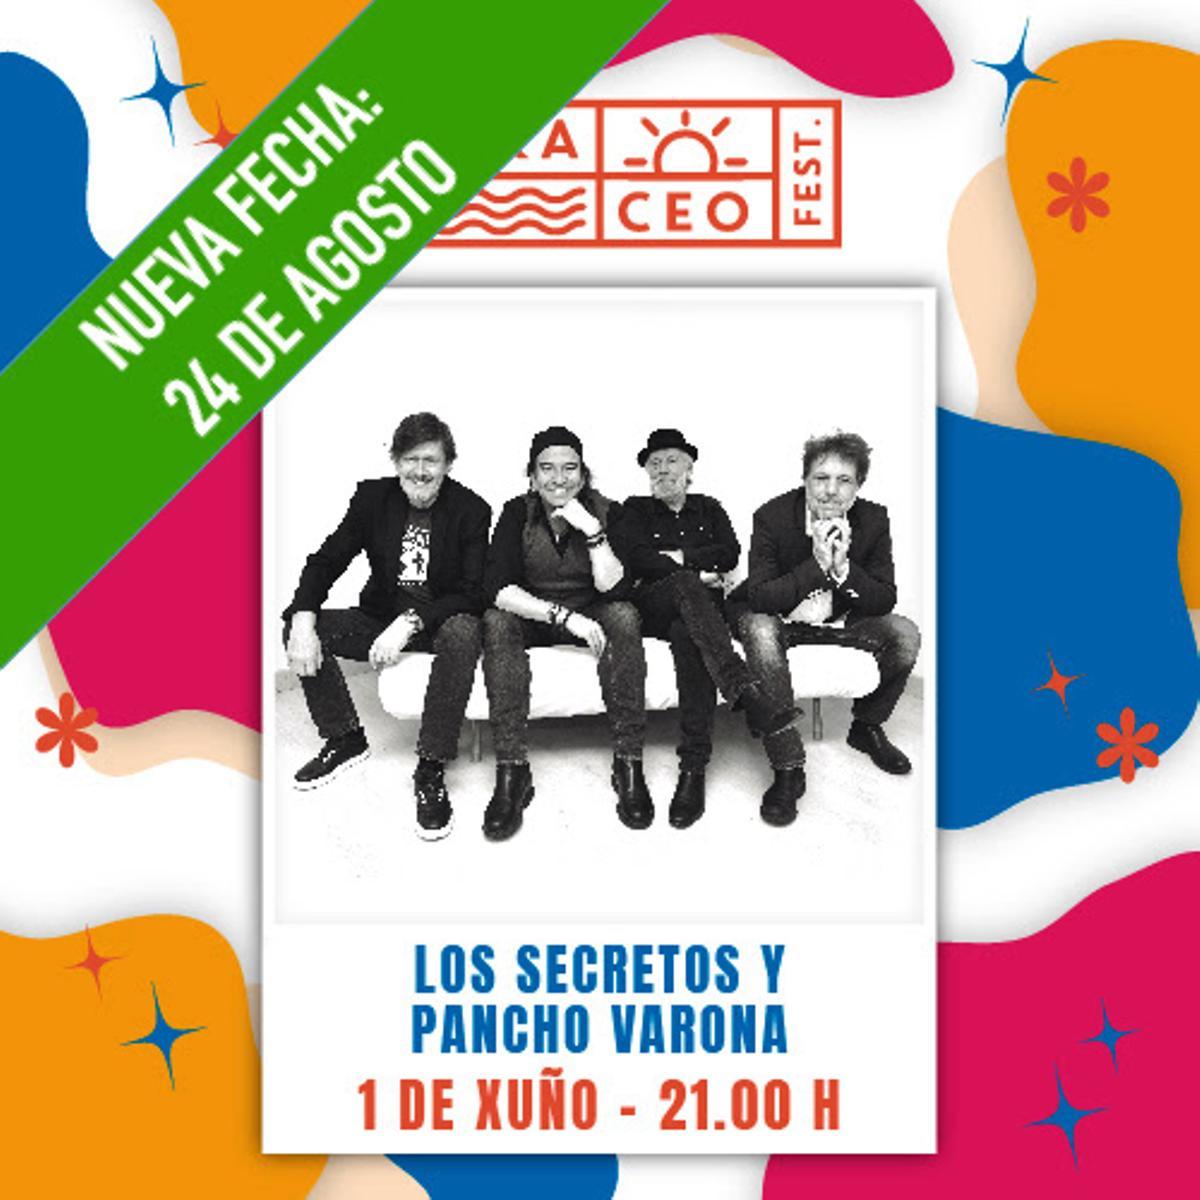 Nueva fecha para el concierto de Los Secretos y Pancho Varona en el TerraCeo de Vigo.